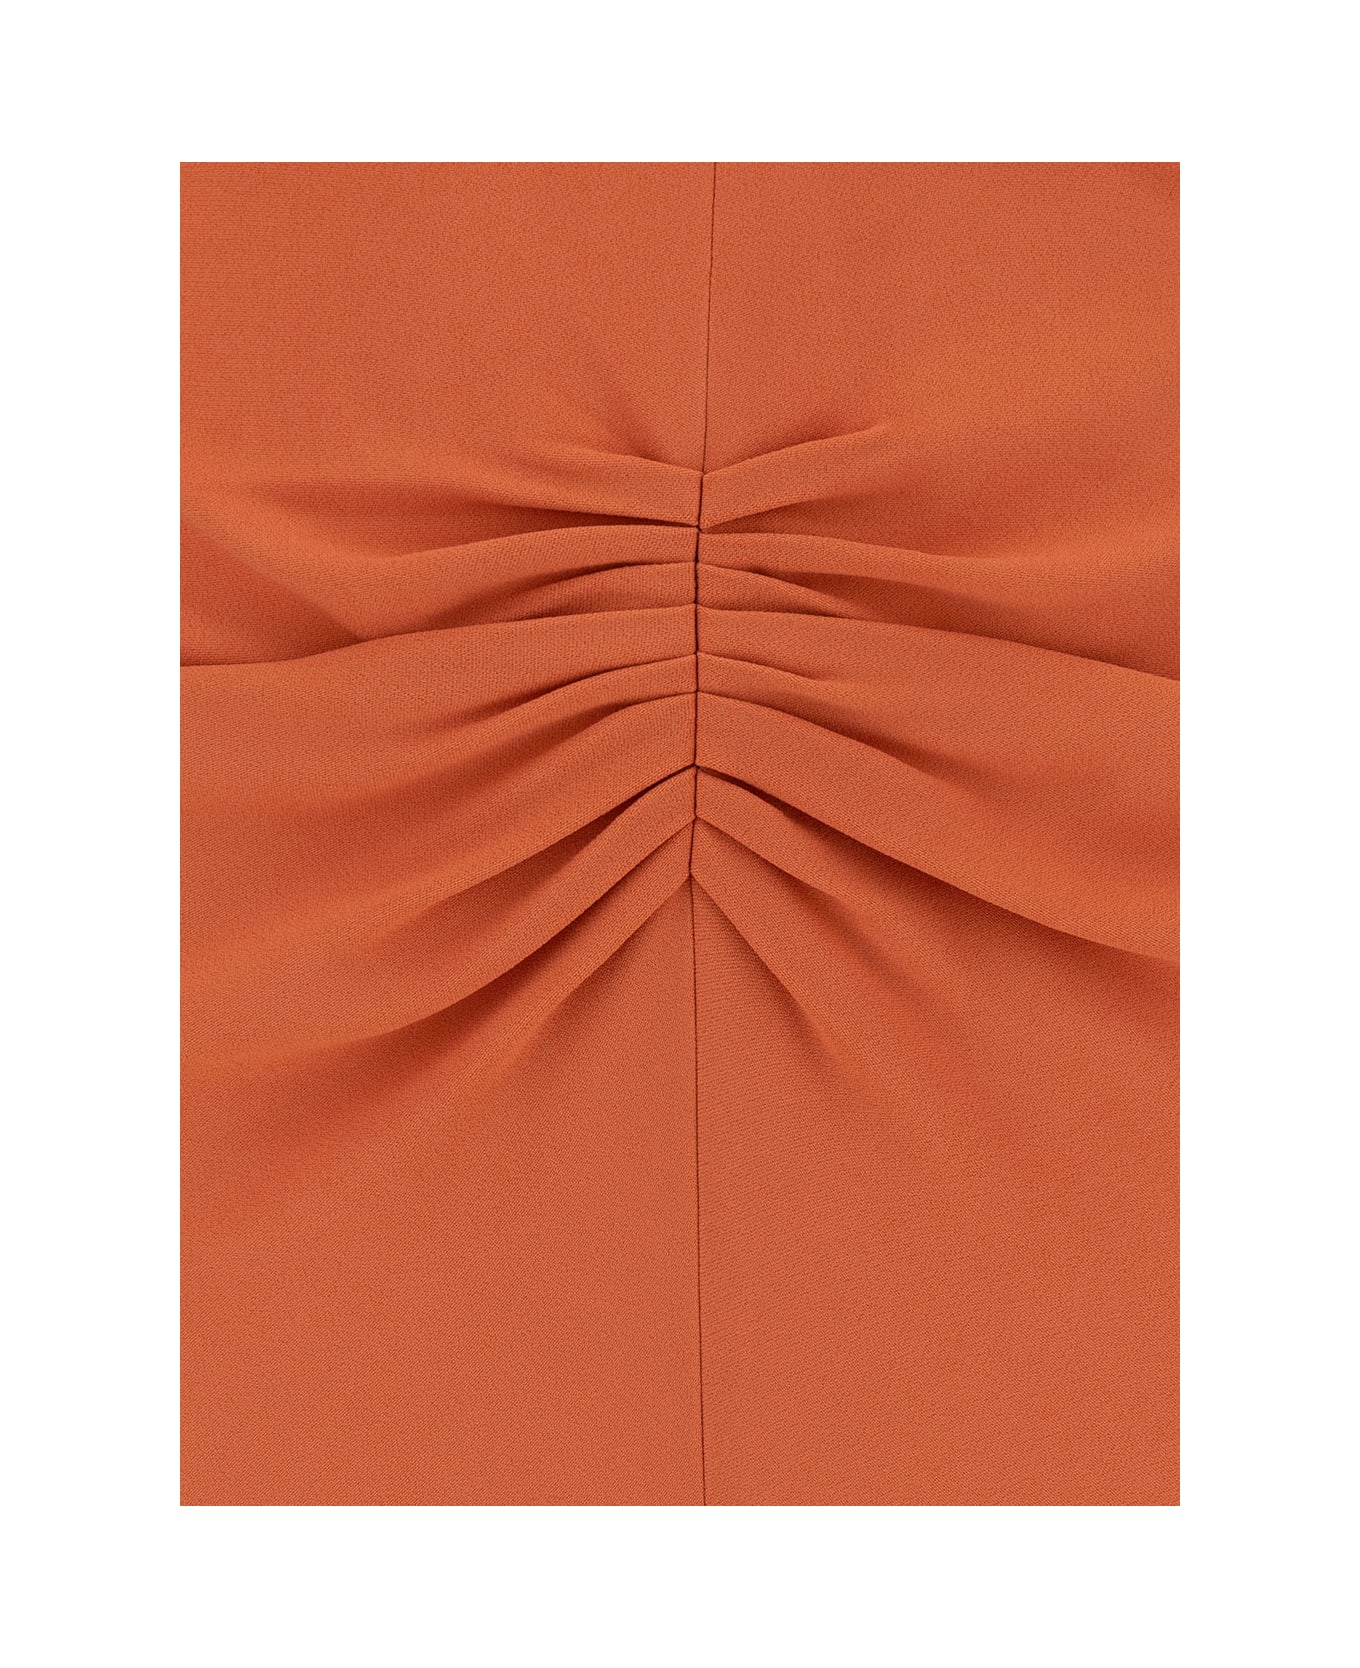 Victoria Beckham Midi Orange Dress With Gathered Waist In Viscose Blend Woman - Orange